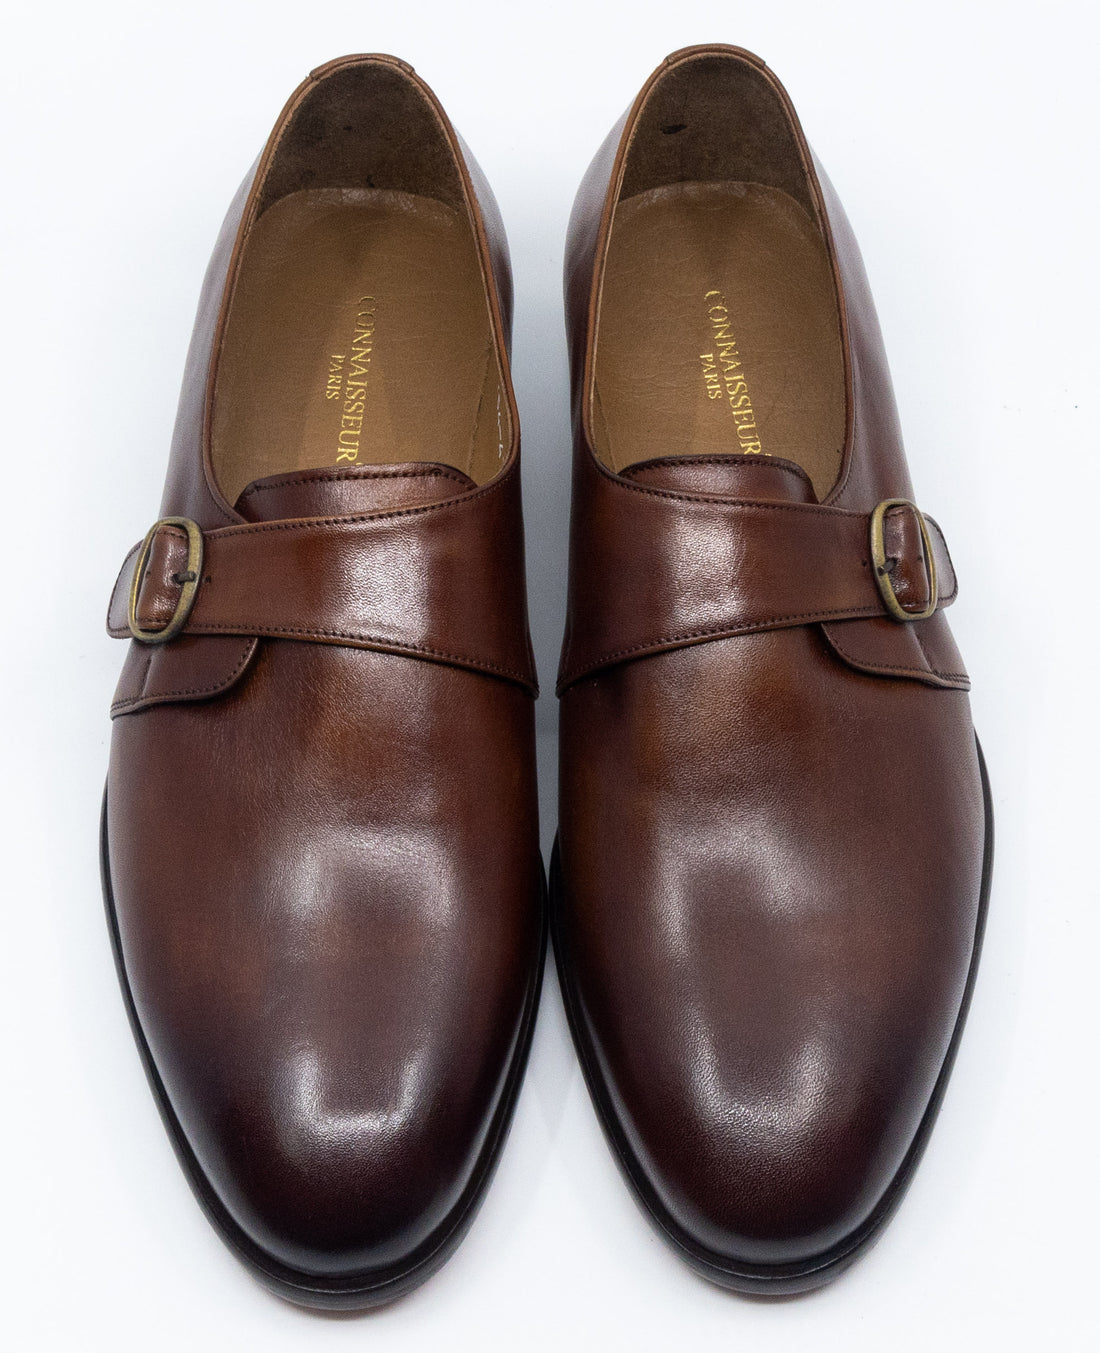 Connaisseur - Brown monk strap plain toe dress shoes